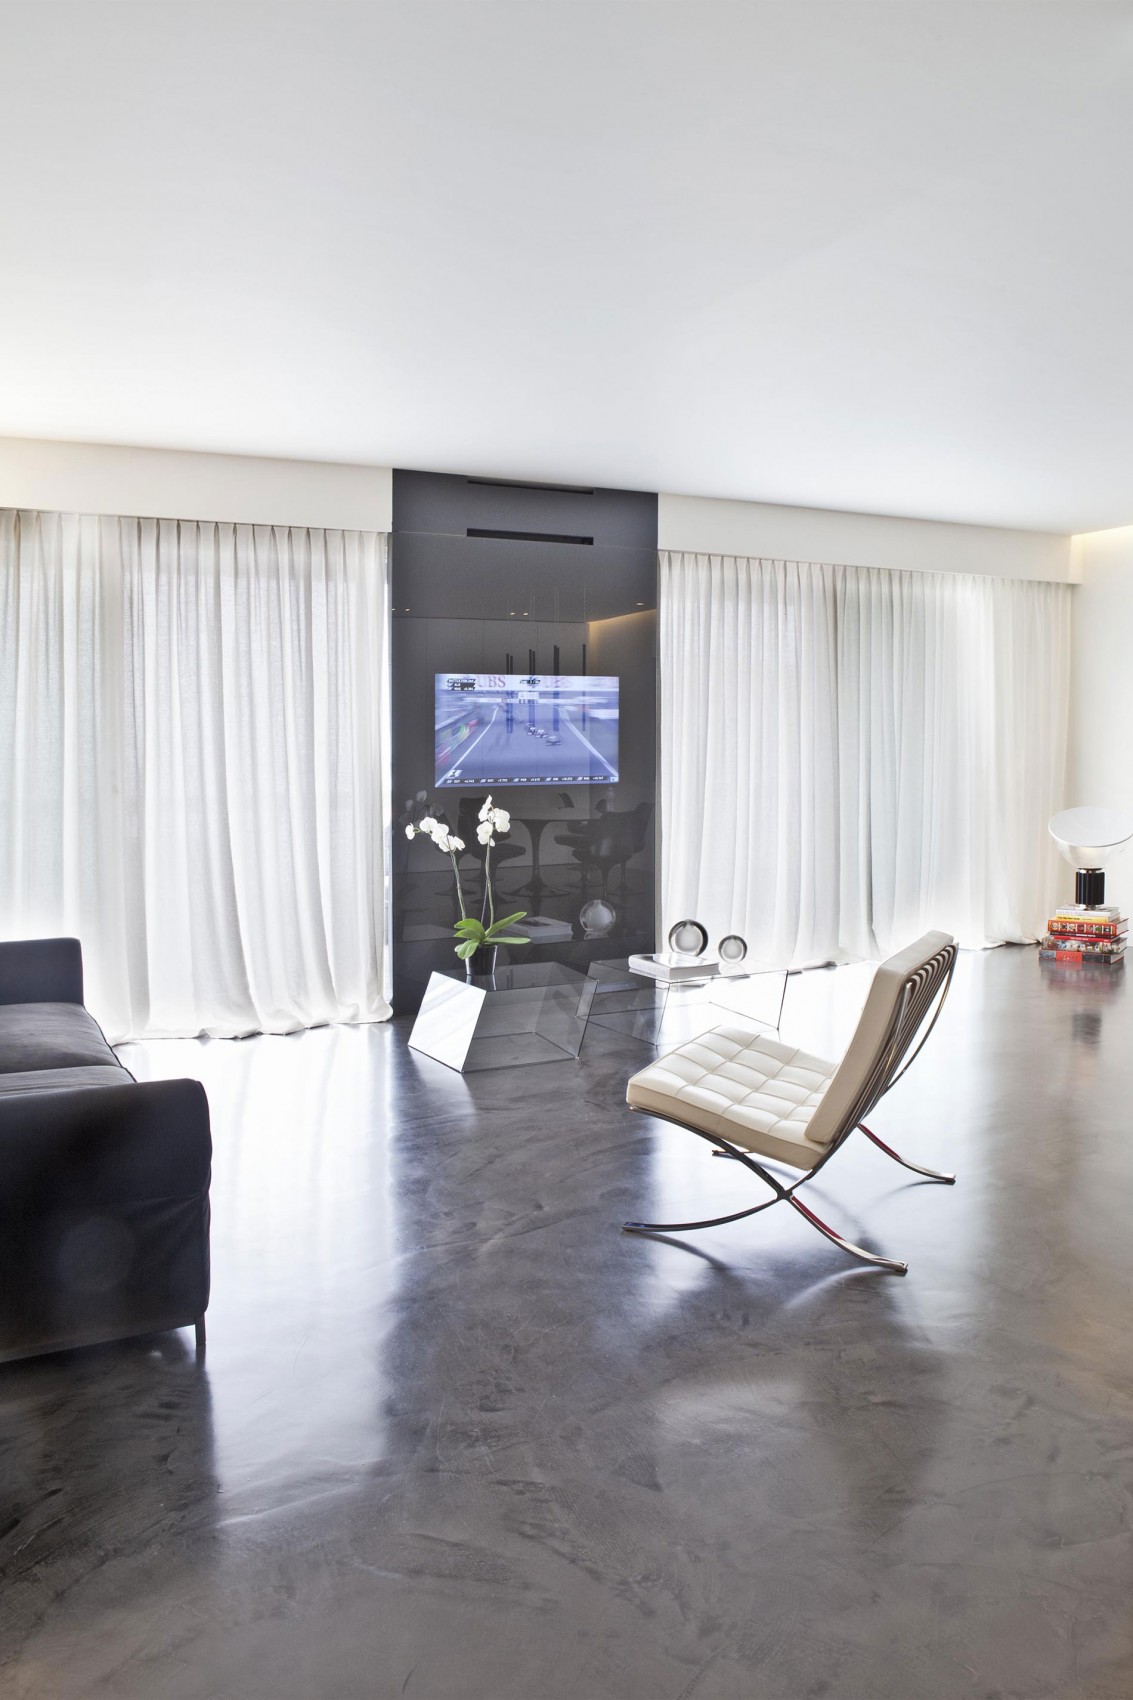 摩纳哥空间多变公寓——Federico Delrosso Architects